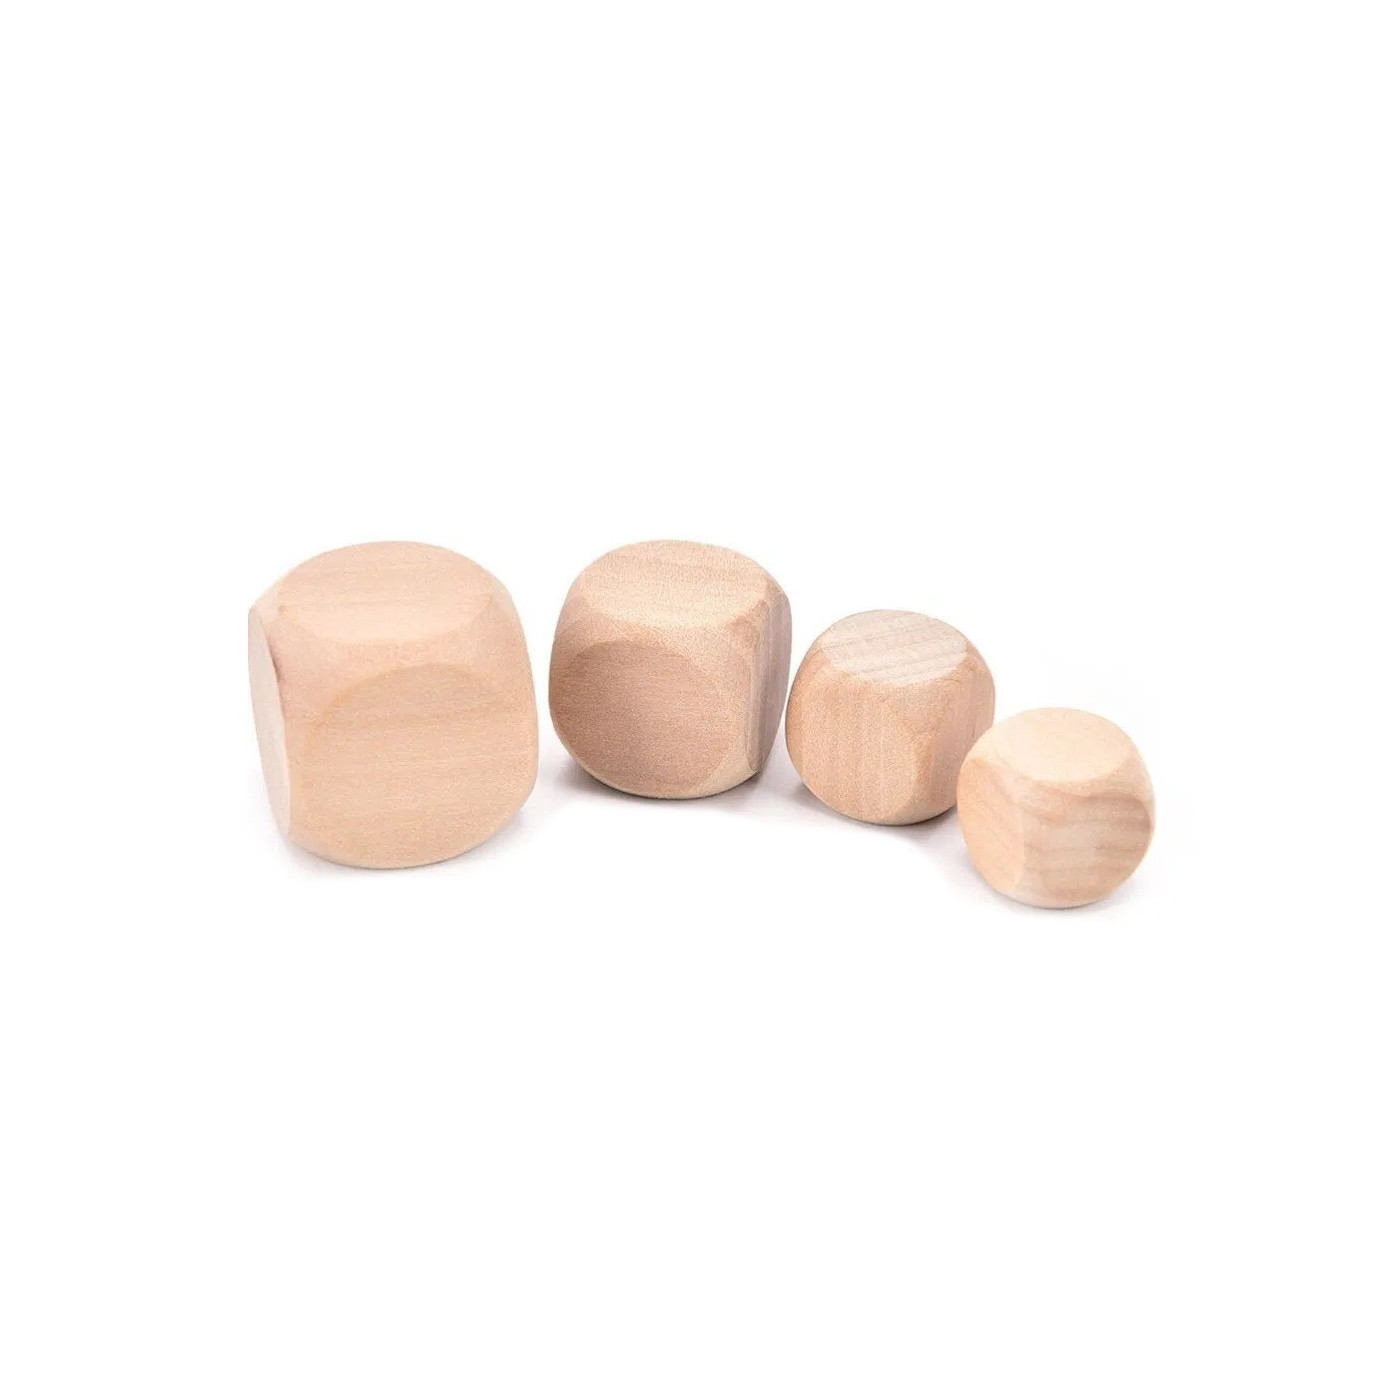 Conjunto de 100 cubos de madera (dados), tamaño: mediano (16 mm)